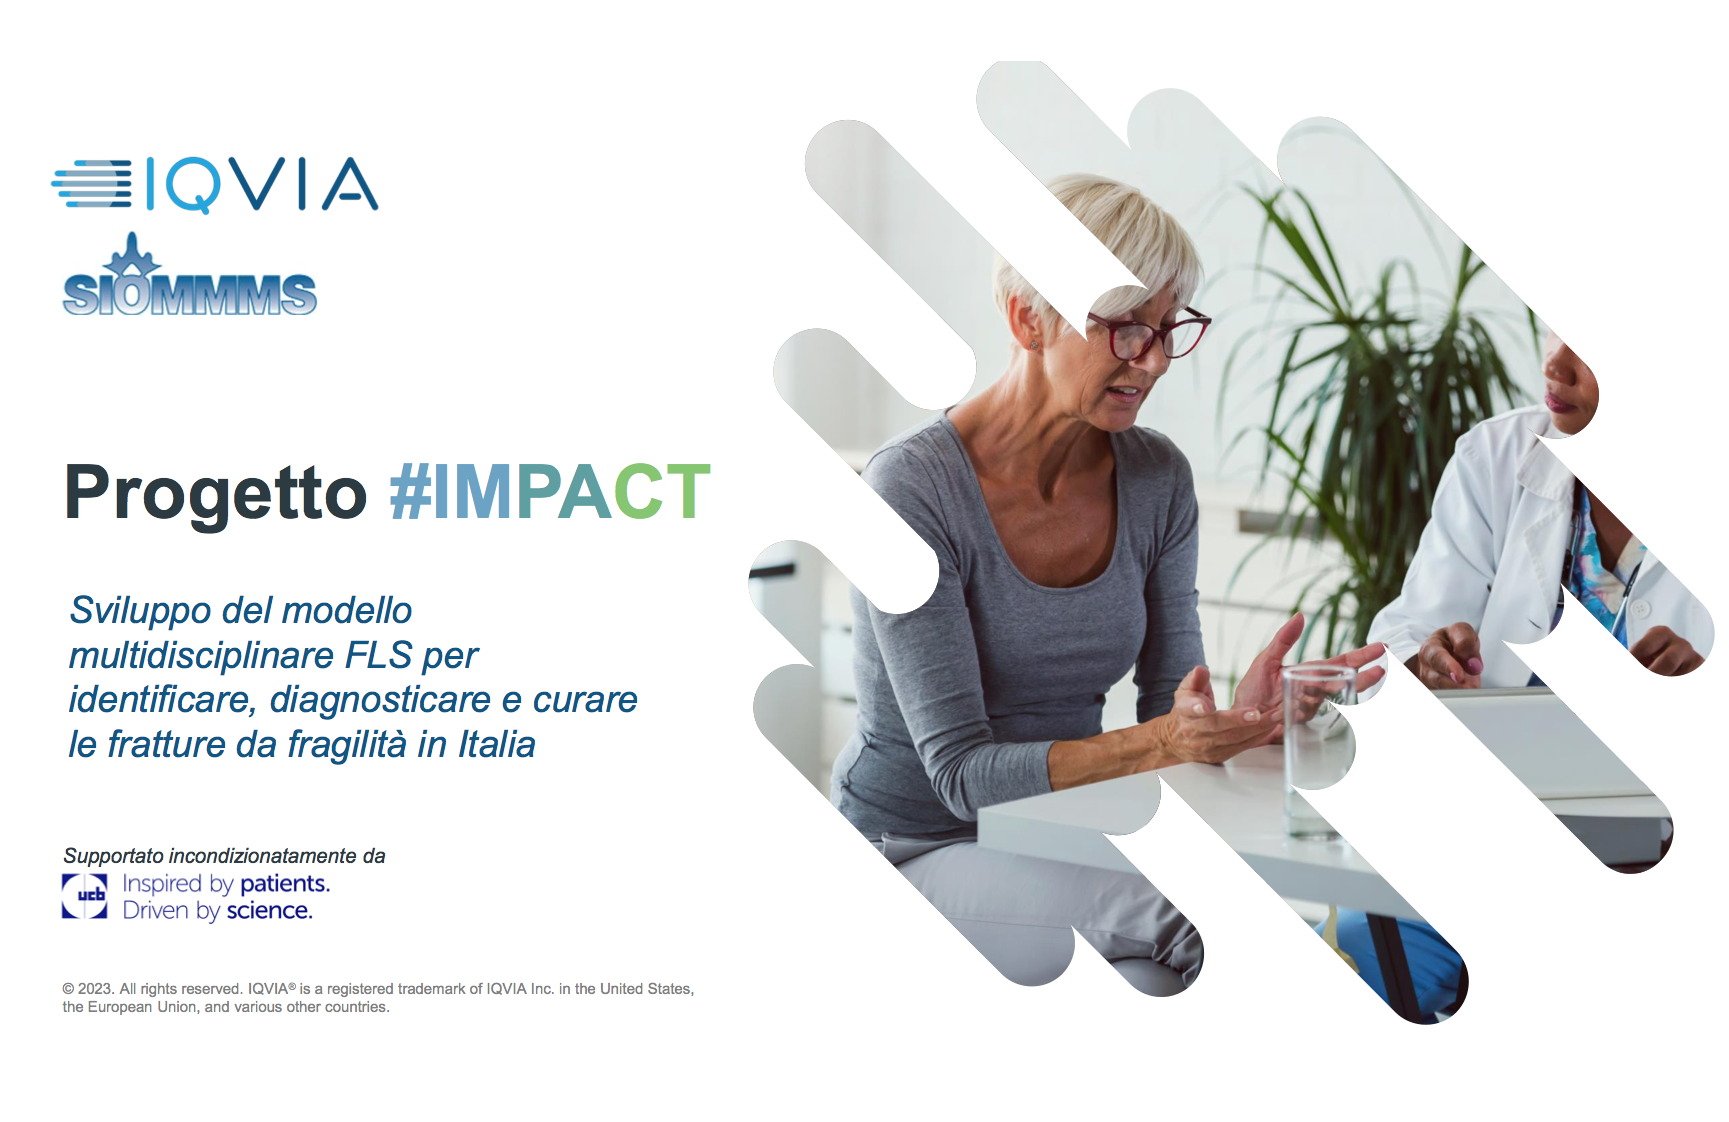 Progetto #IMPACT: pubblicati nuovi contenuti